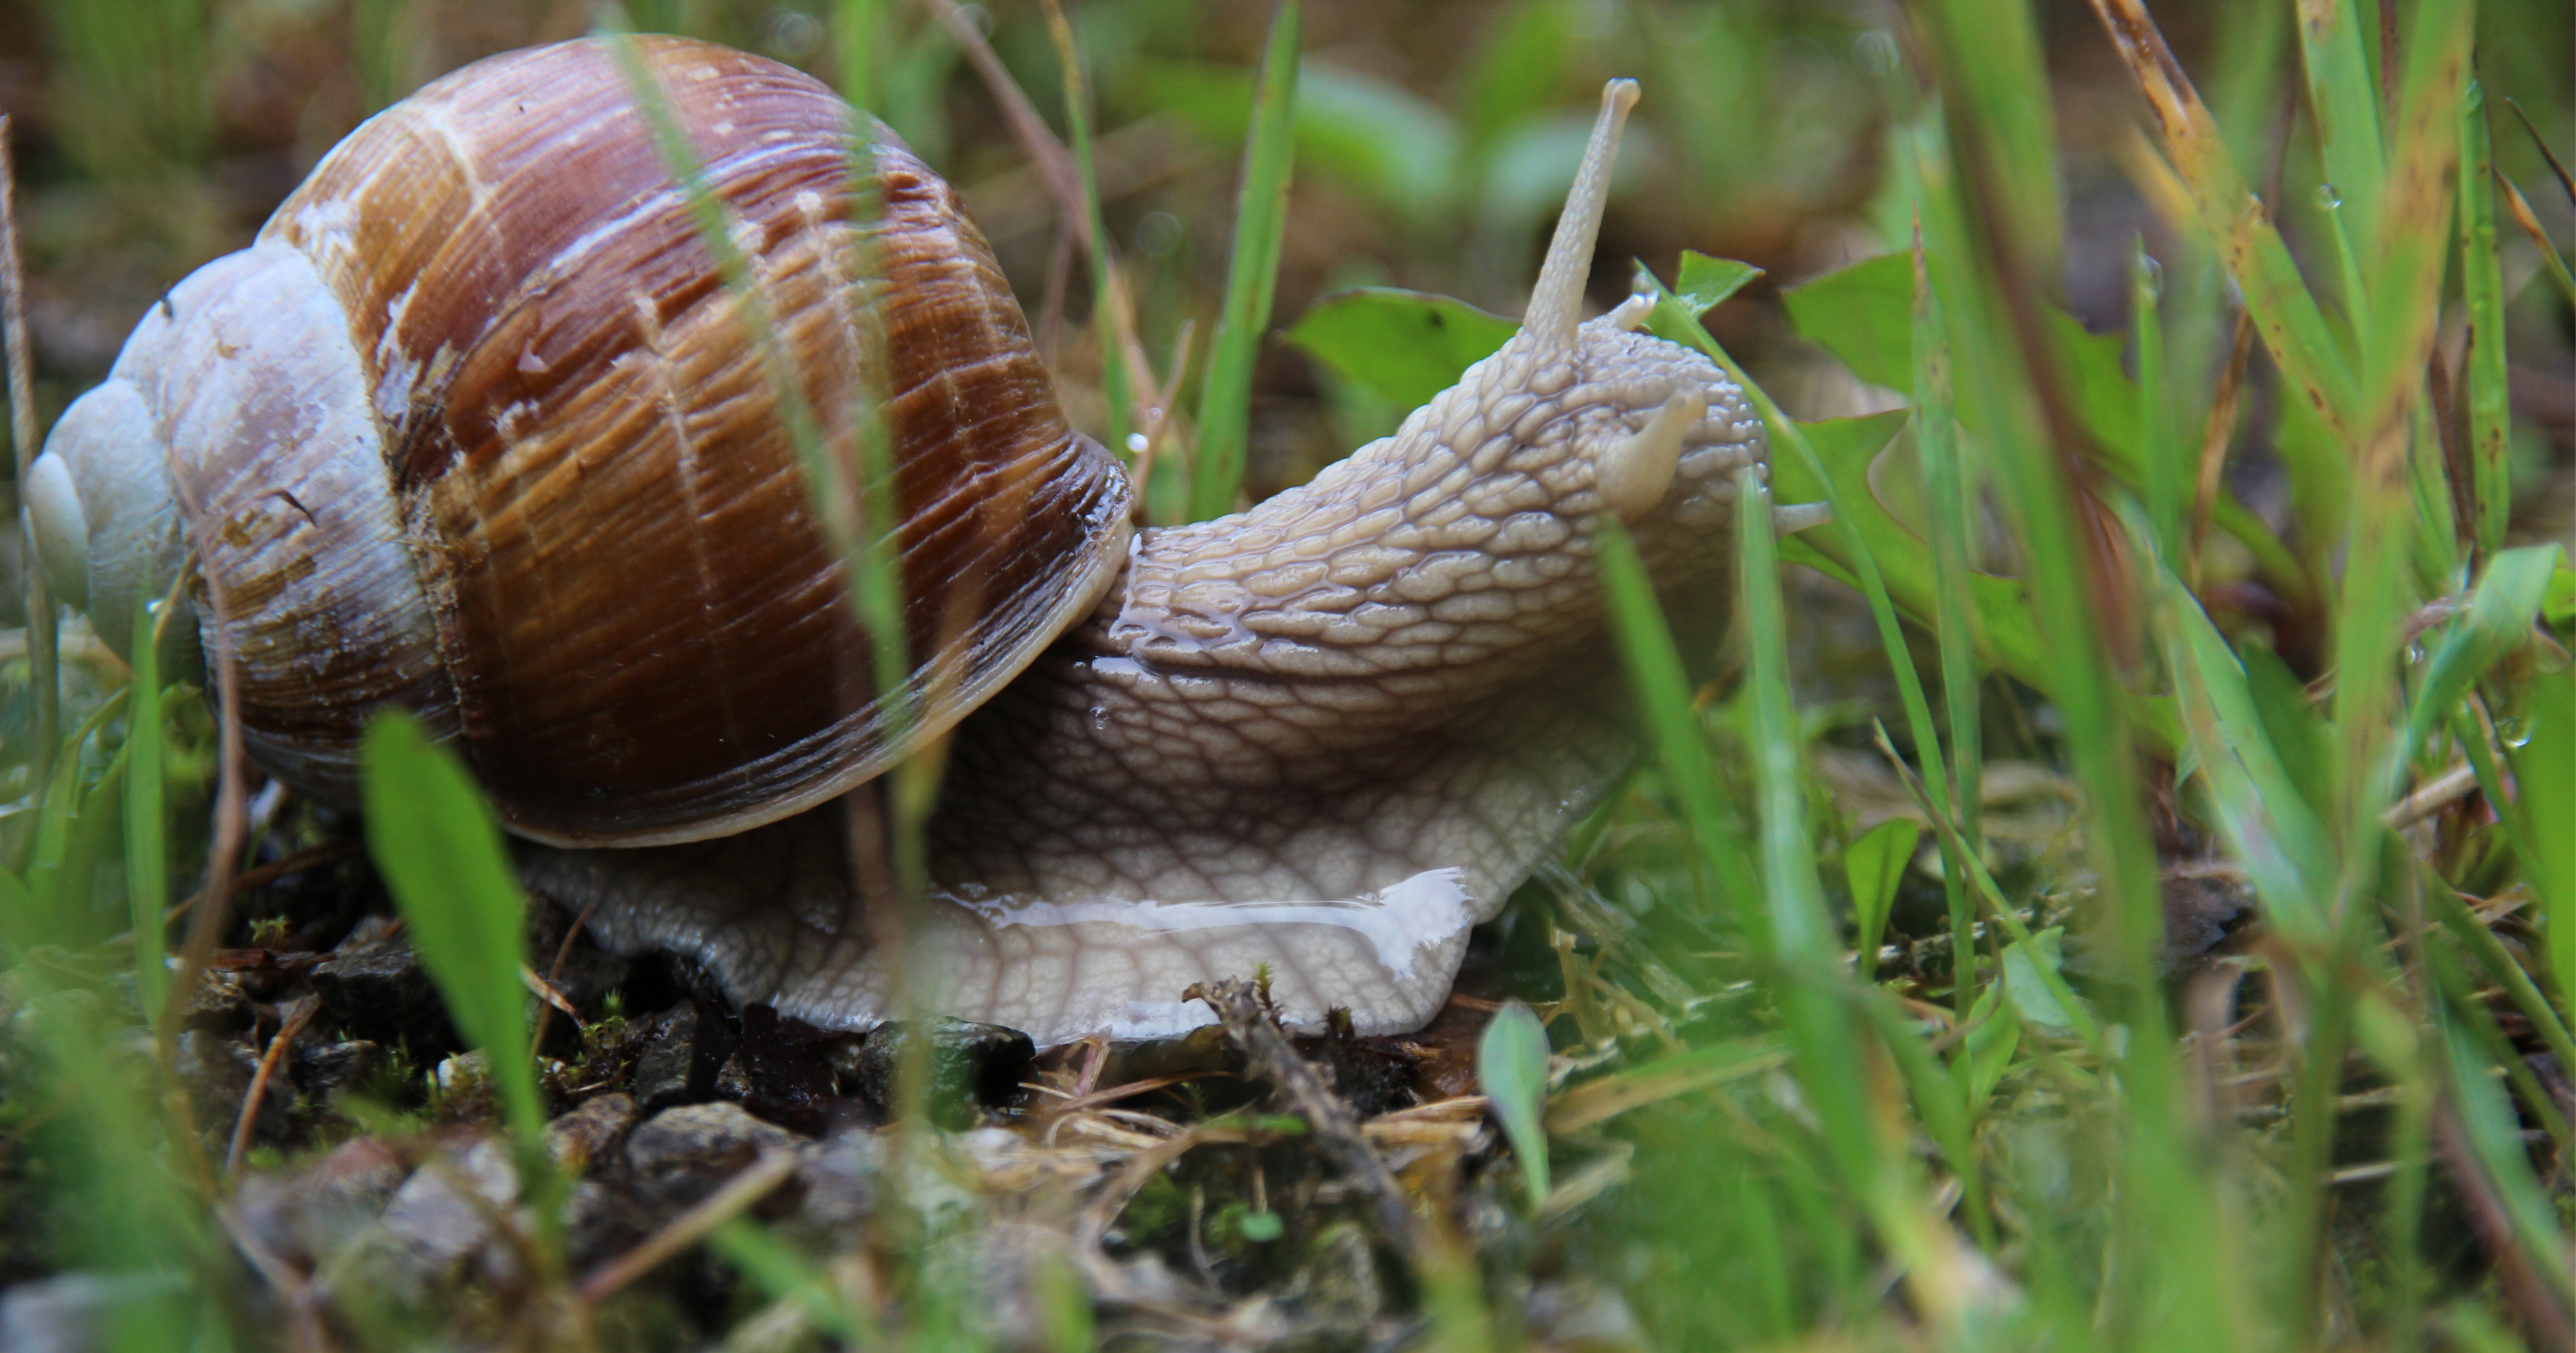 Do Snails Have Legs?